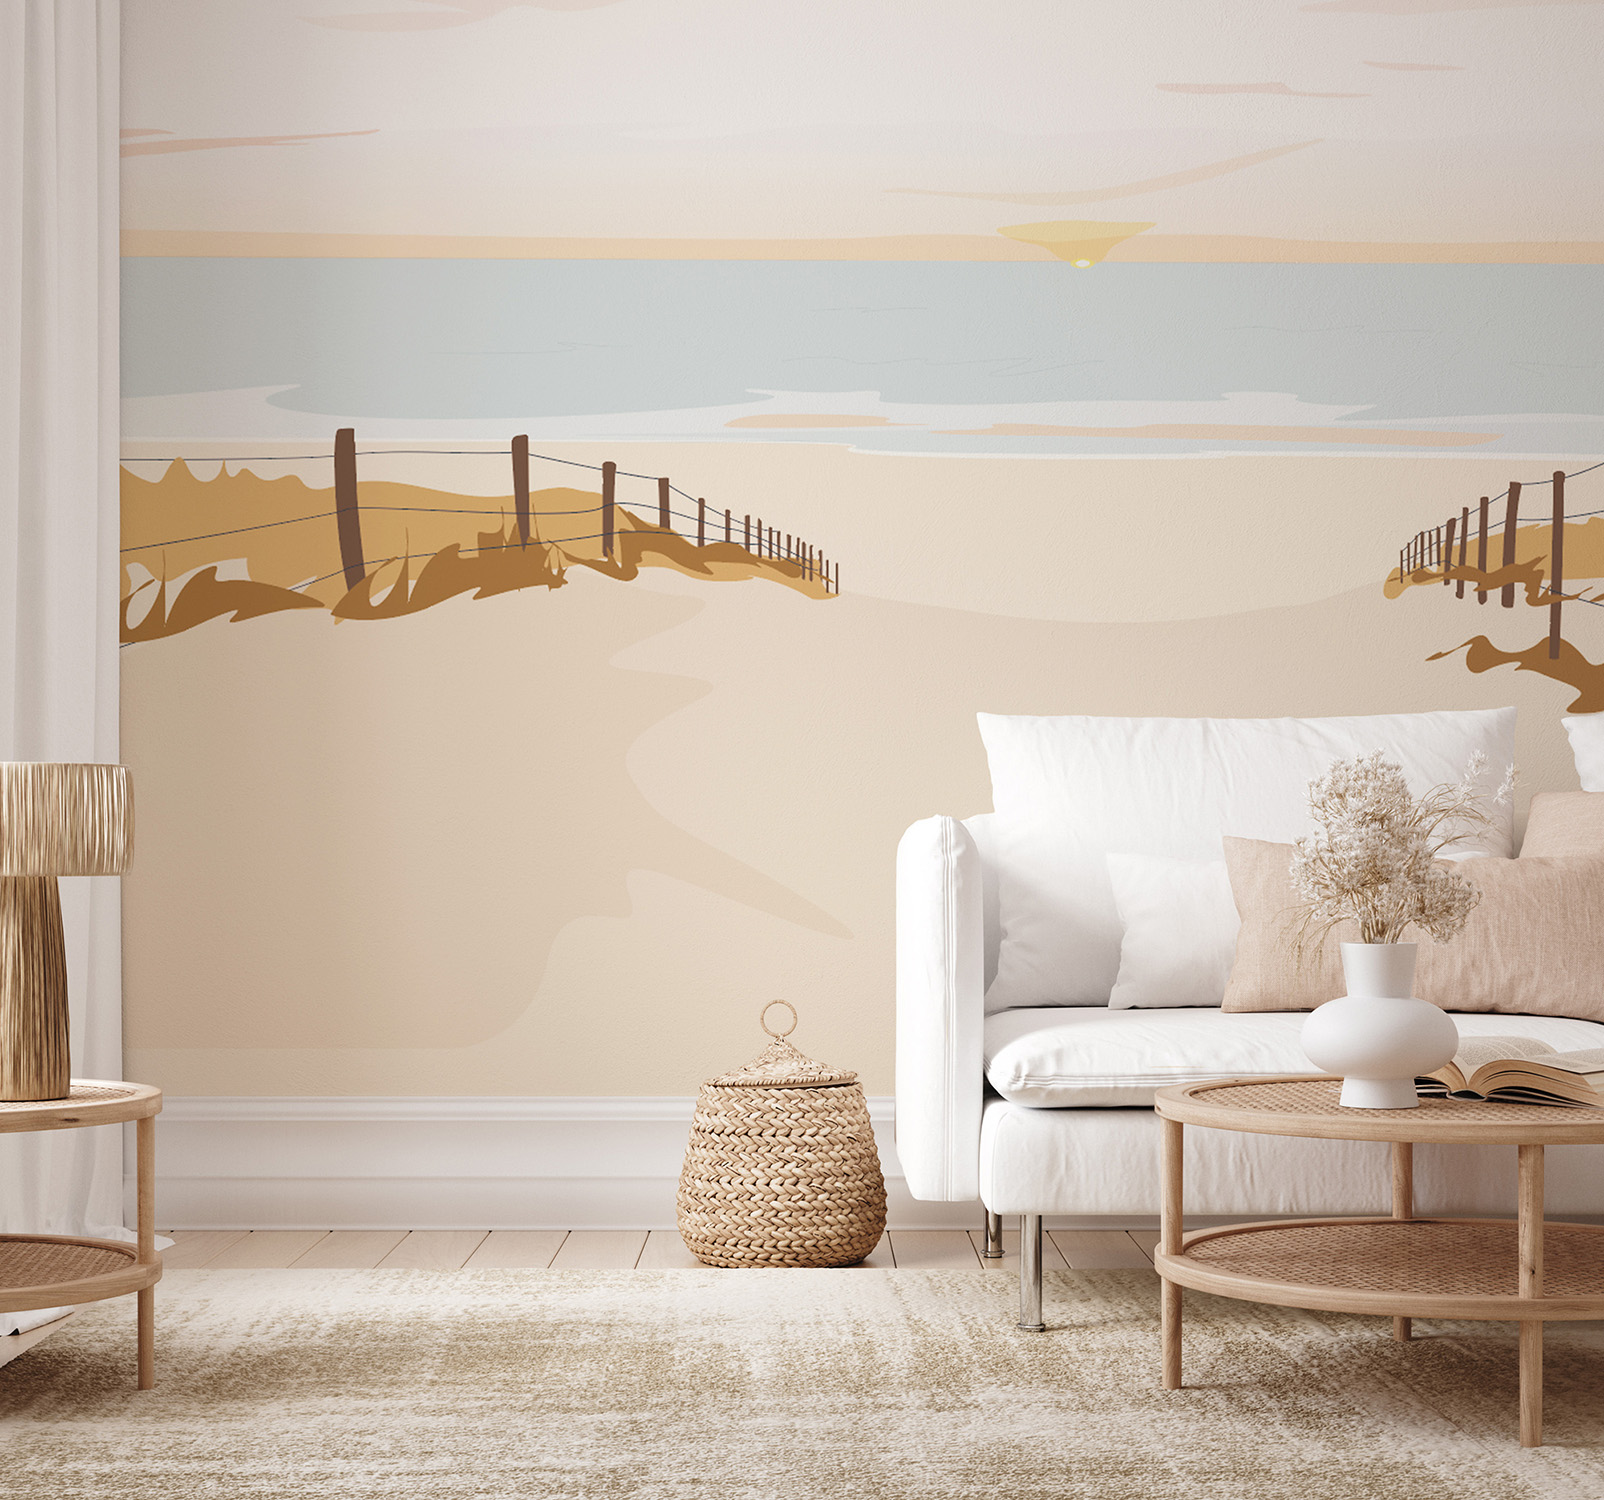 Papier peint panoramique illustration plage océane sud ouest